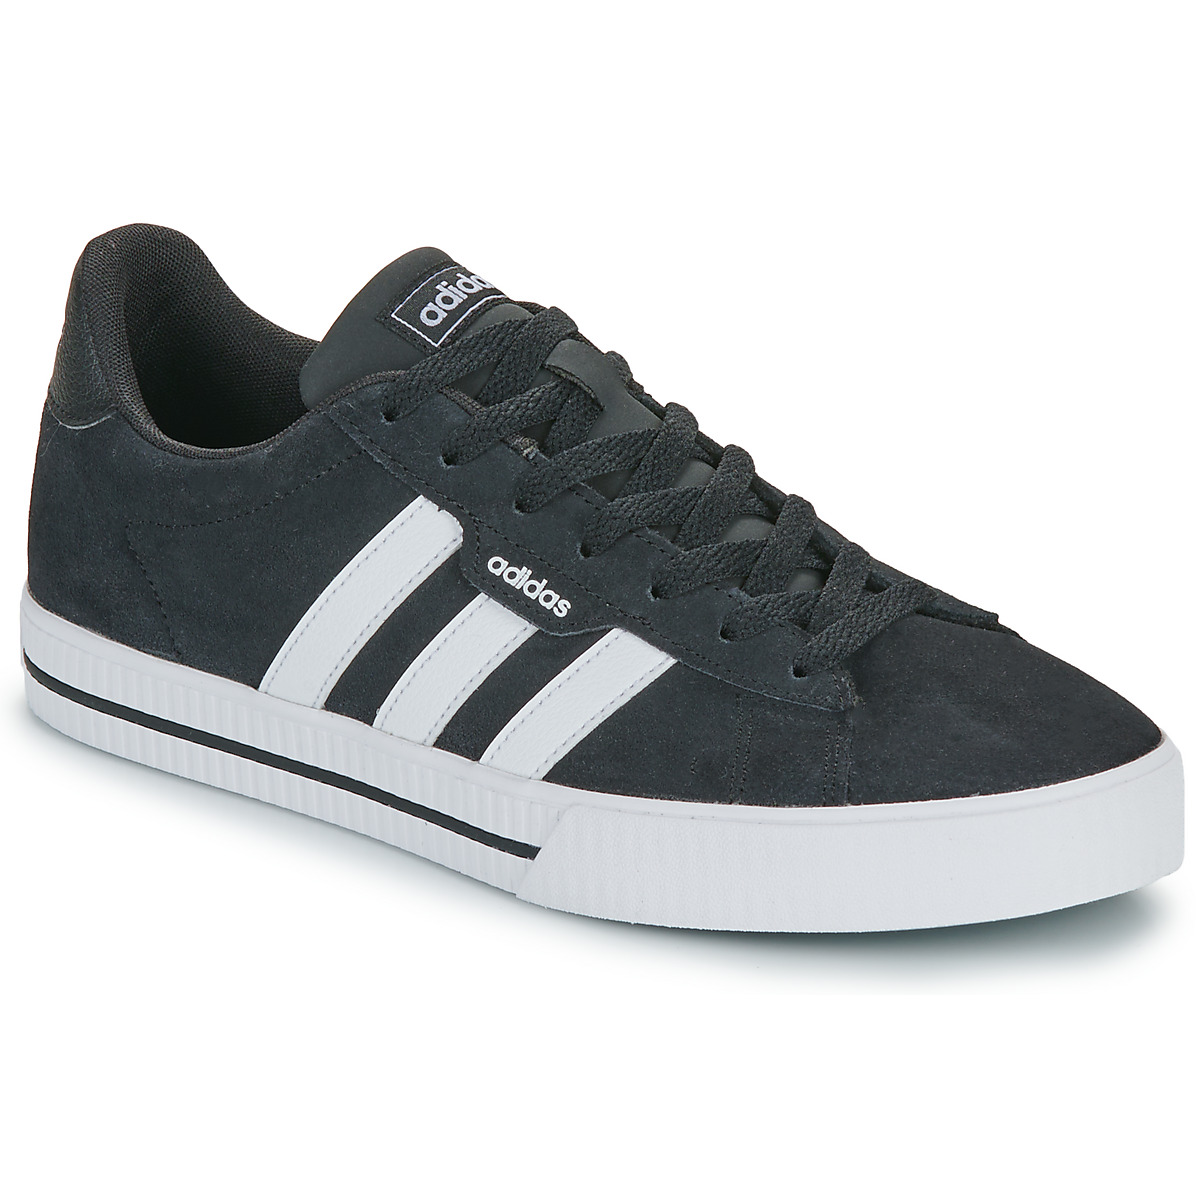 Adidas Daily 3.0 heren sneakers zwart/wit - Maat 41 - Echt leer